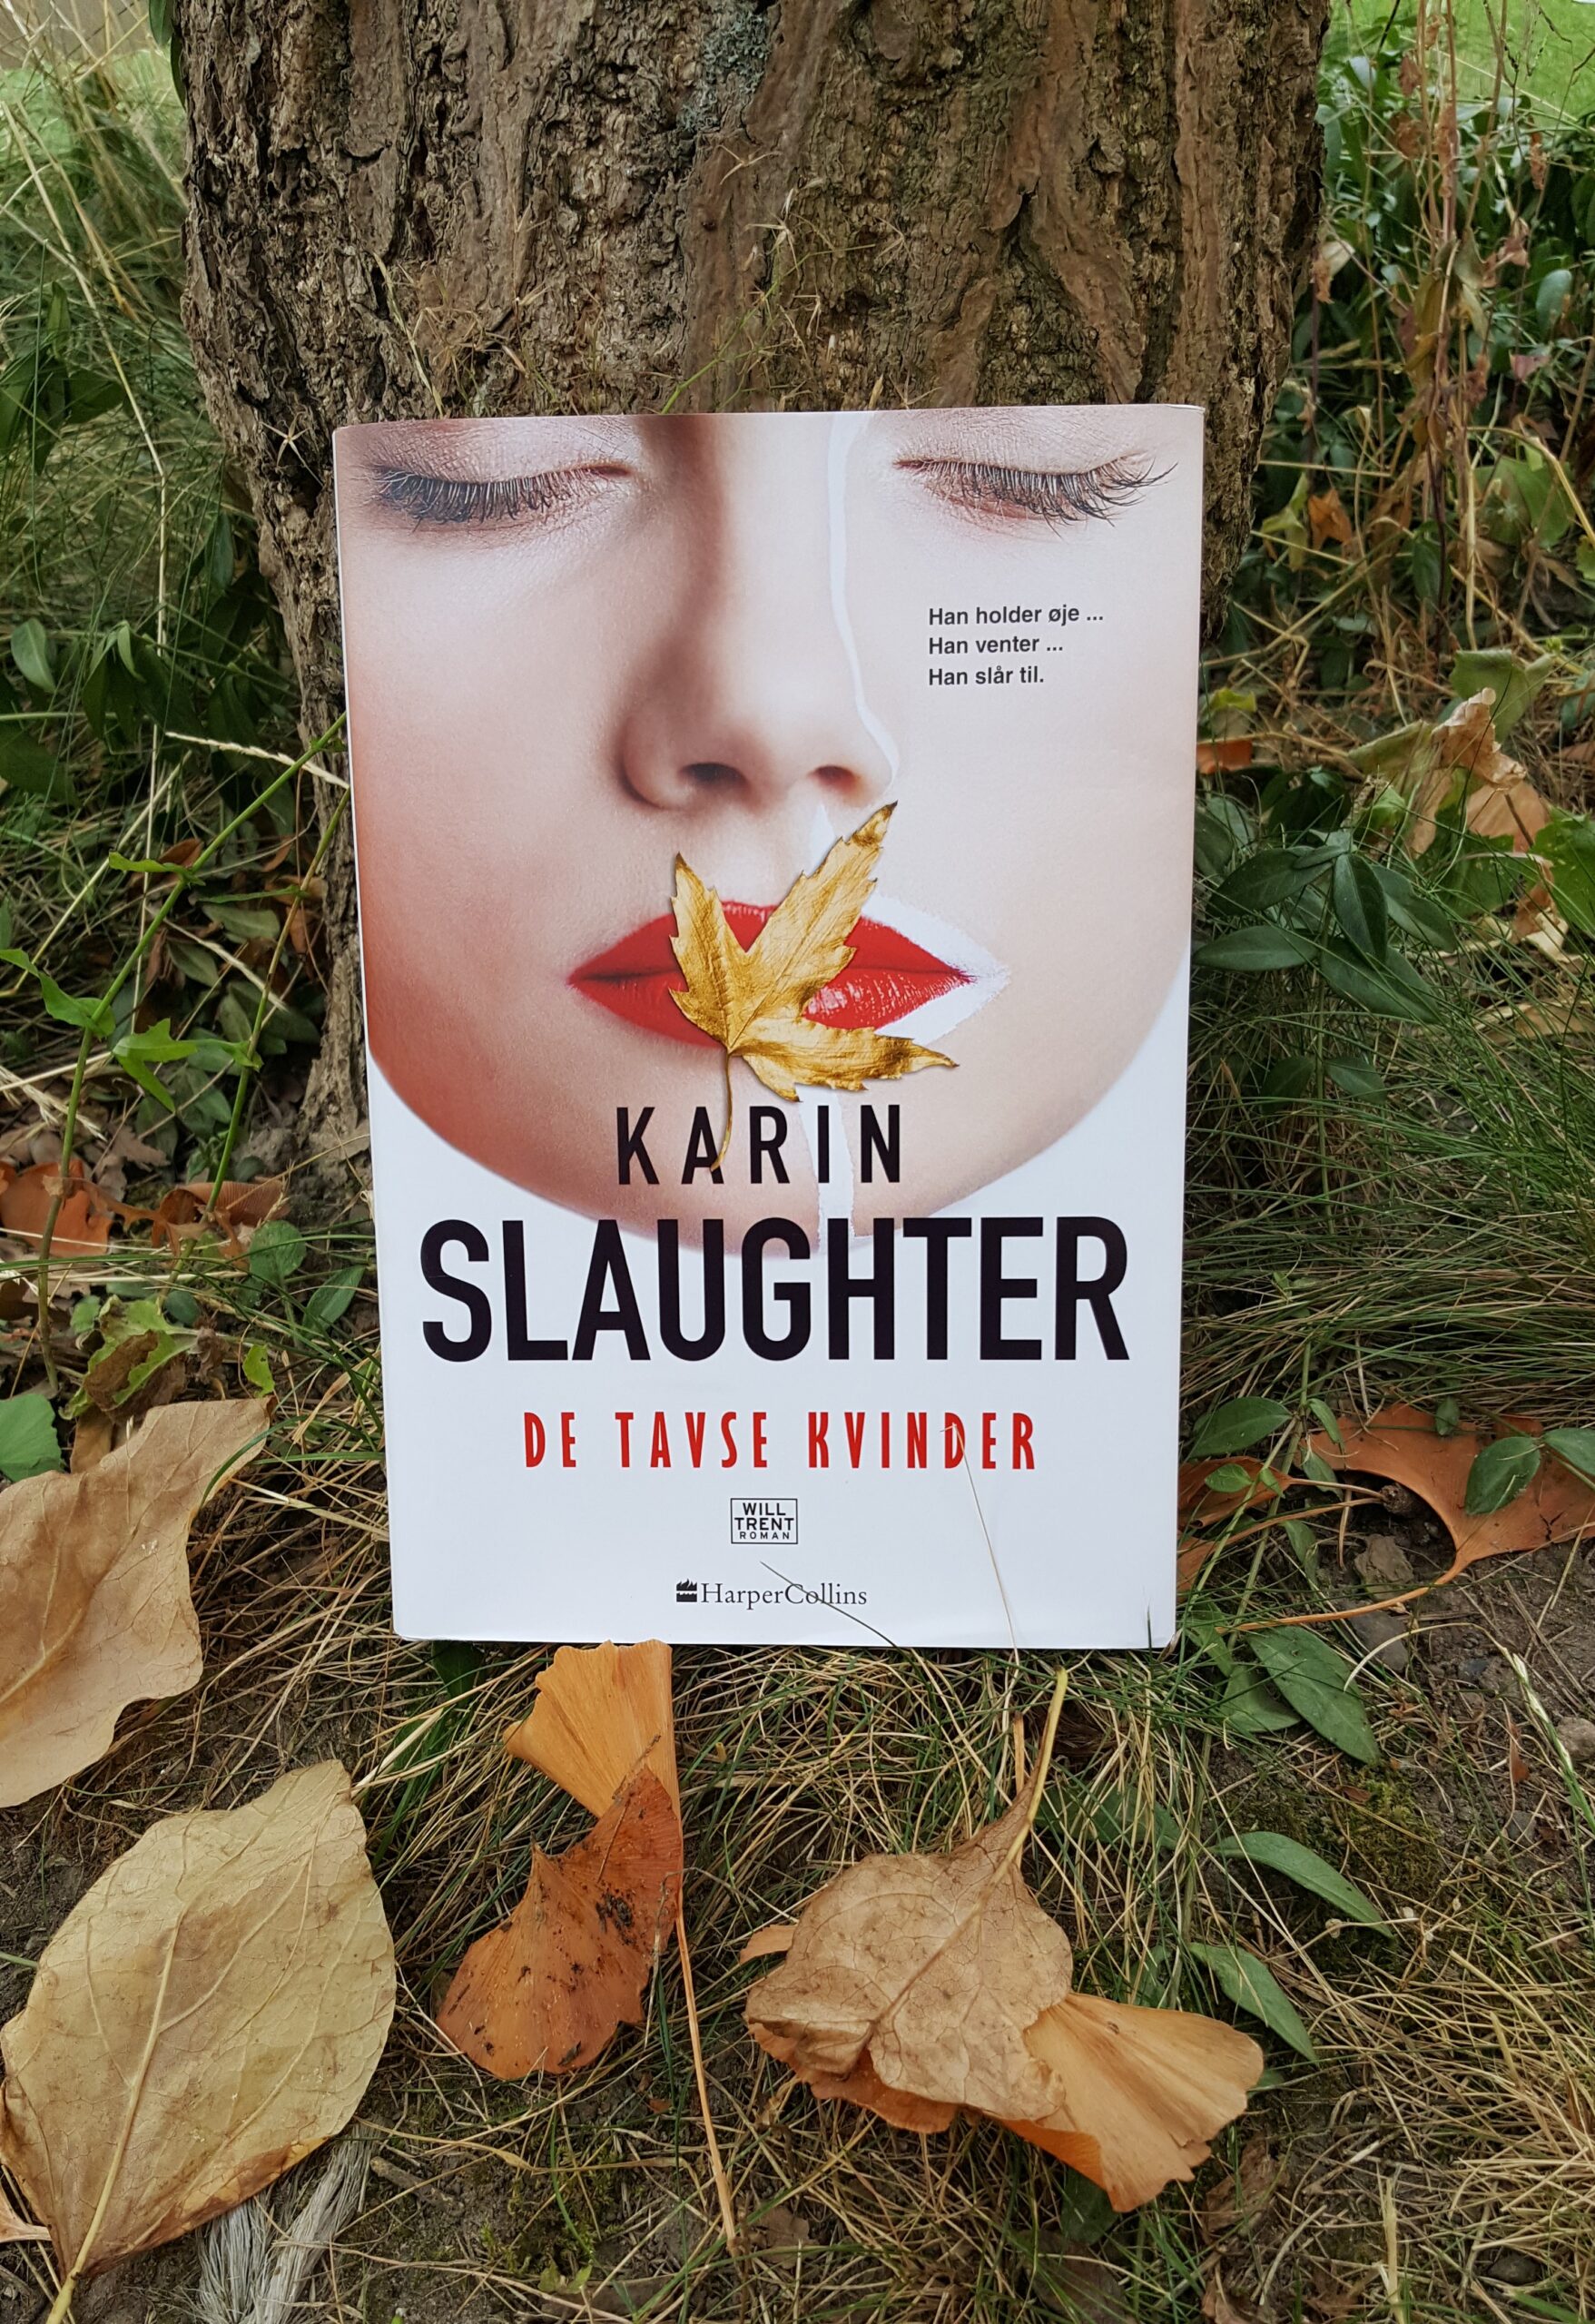 De tavse kvinder af Karin Slaughter